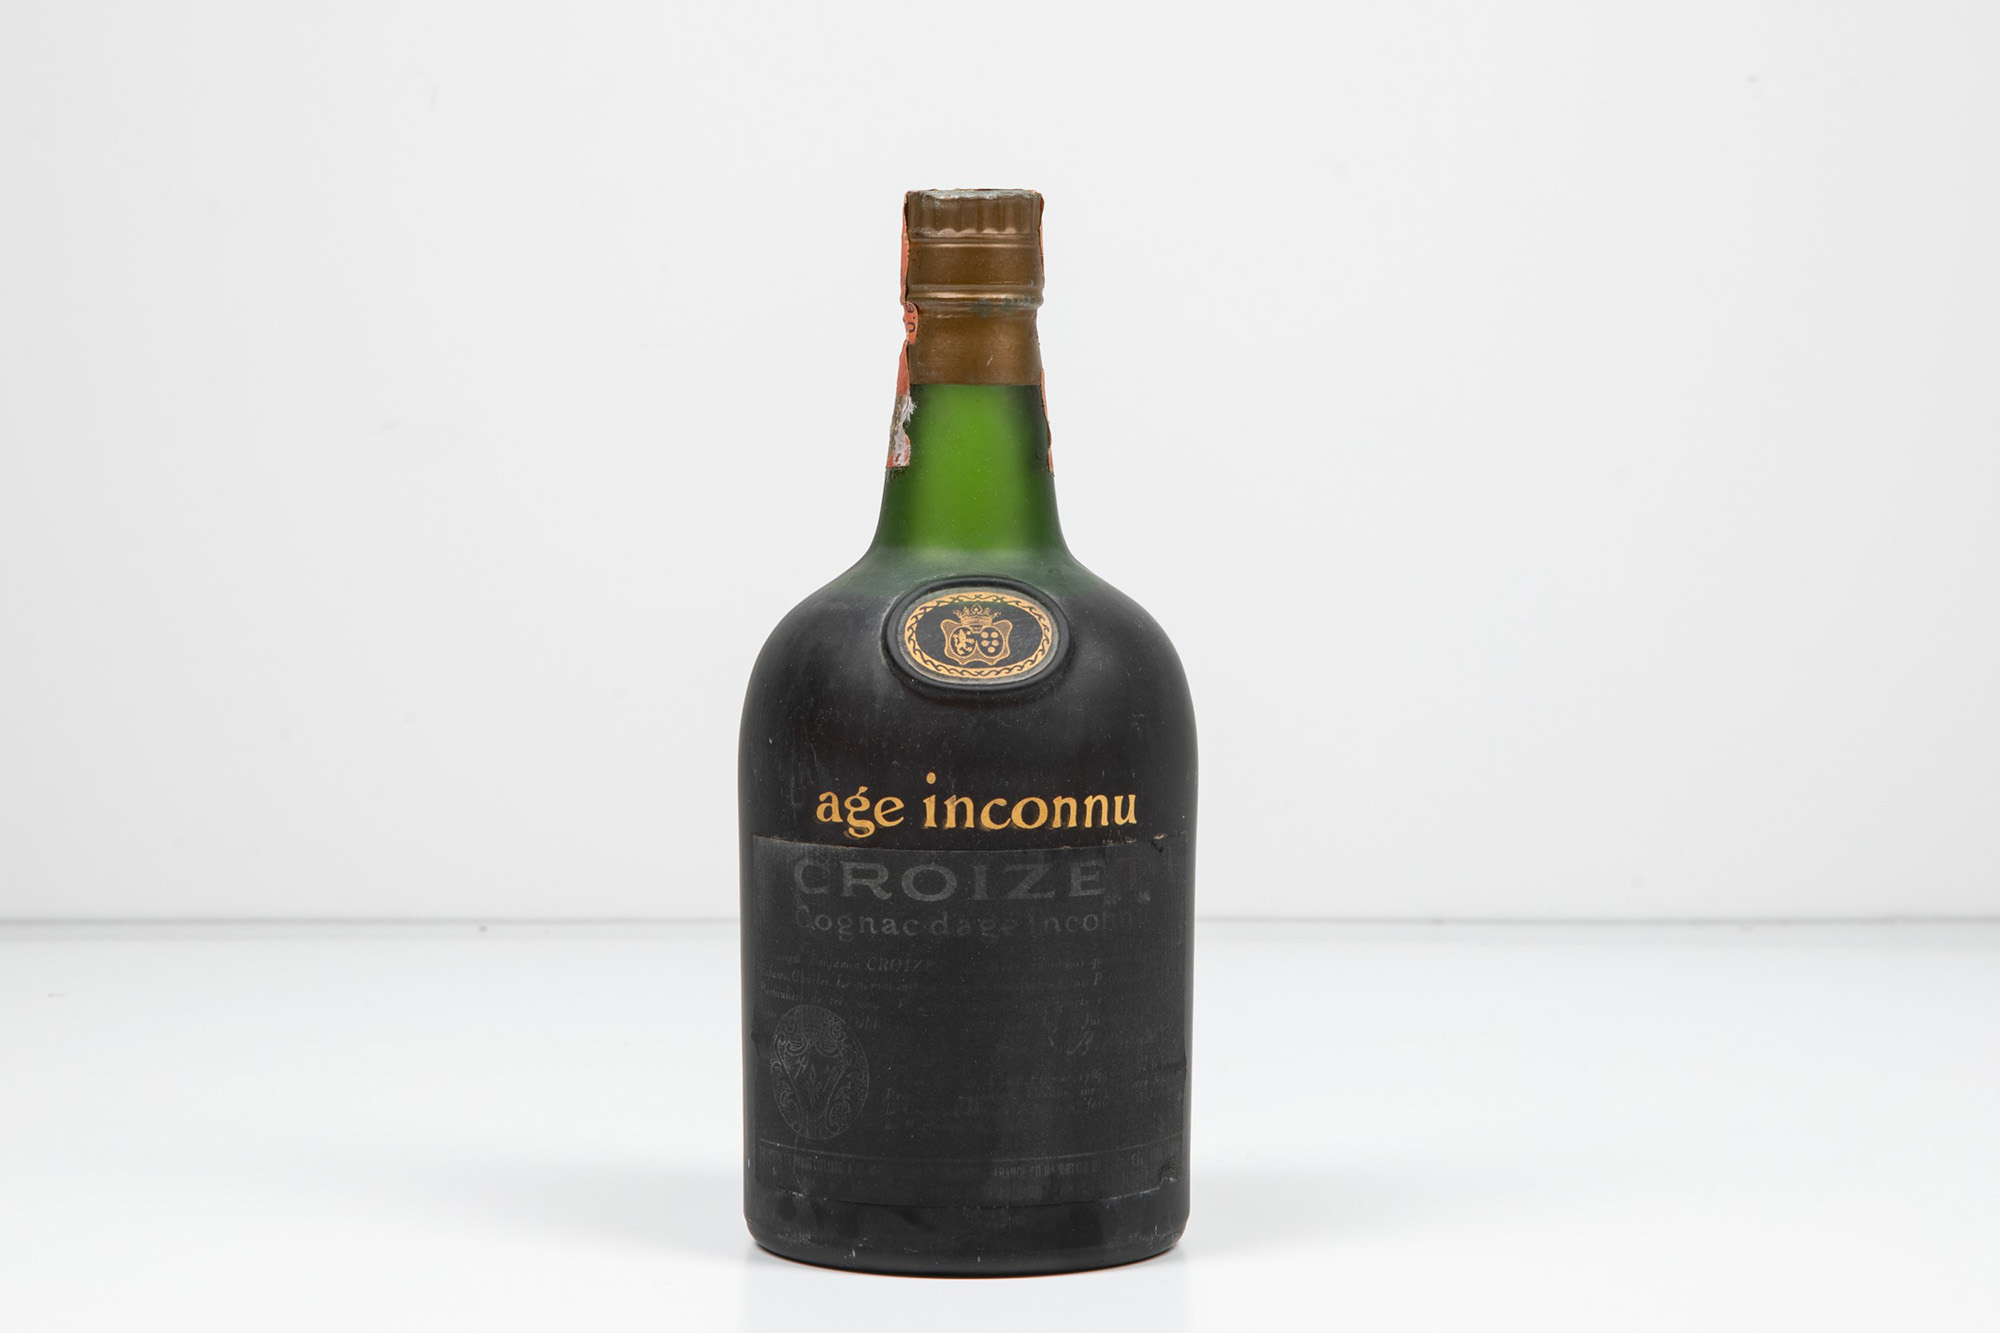 Croizet, Cognac d'age inconnu | CAMBI | ArsValue.com